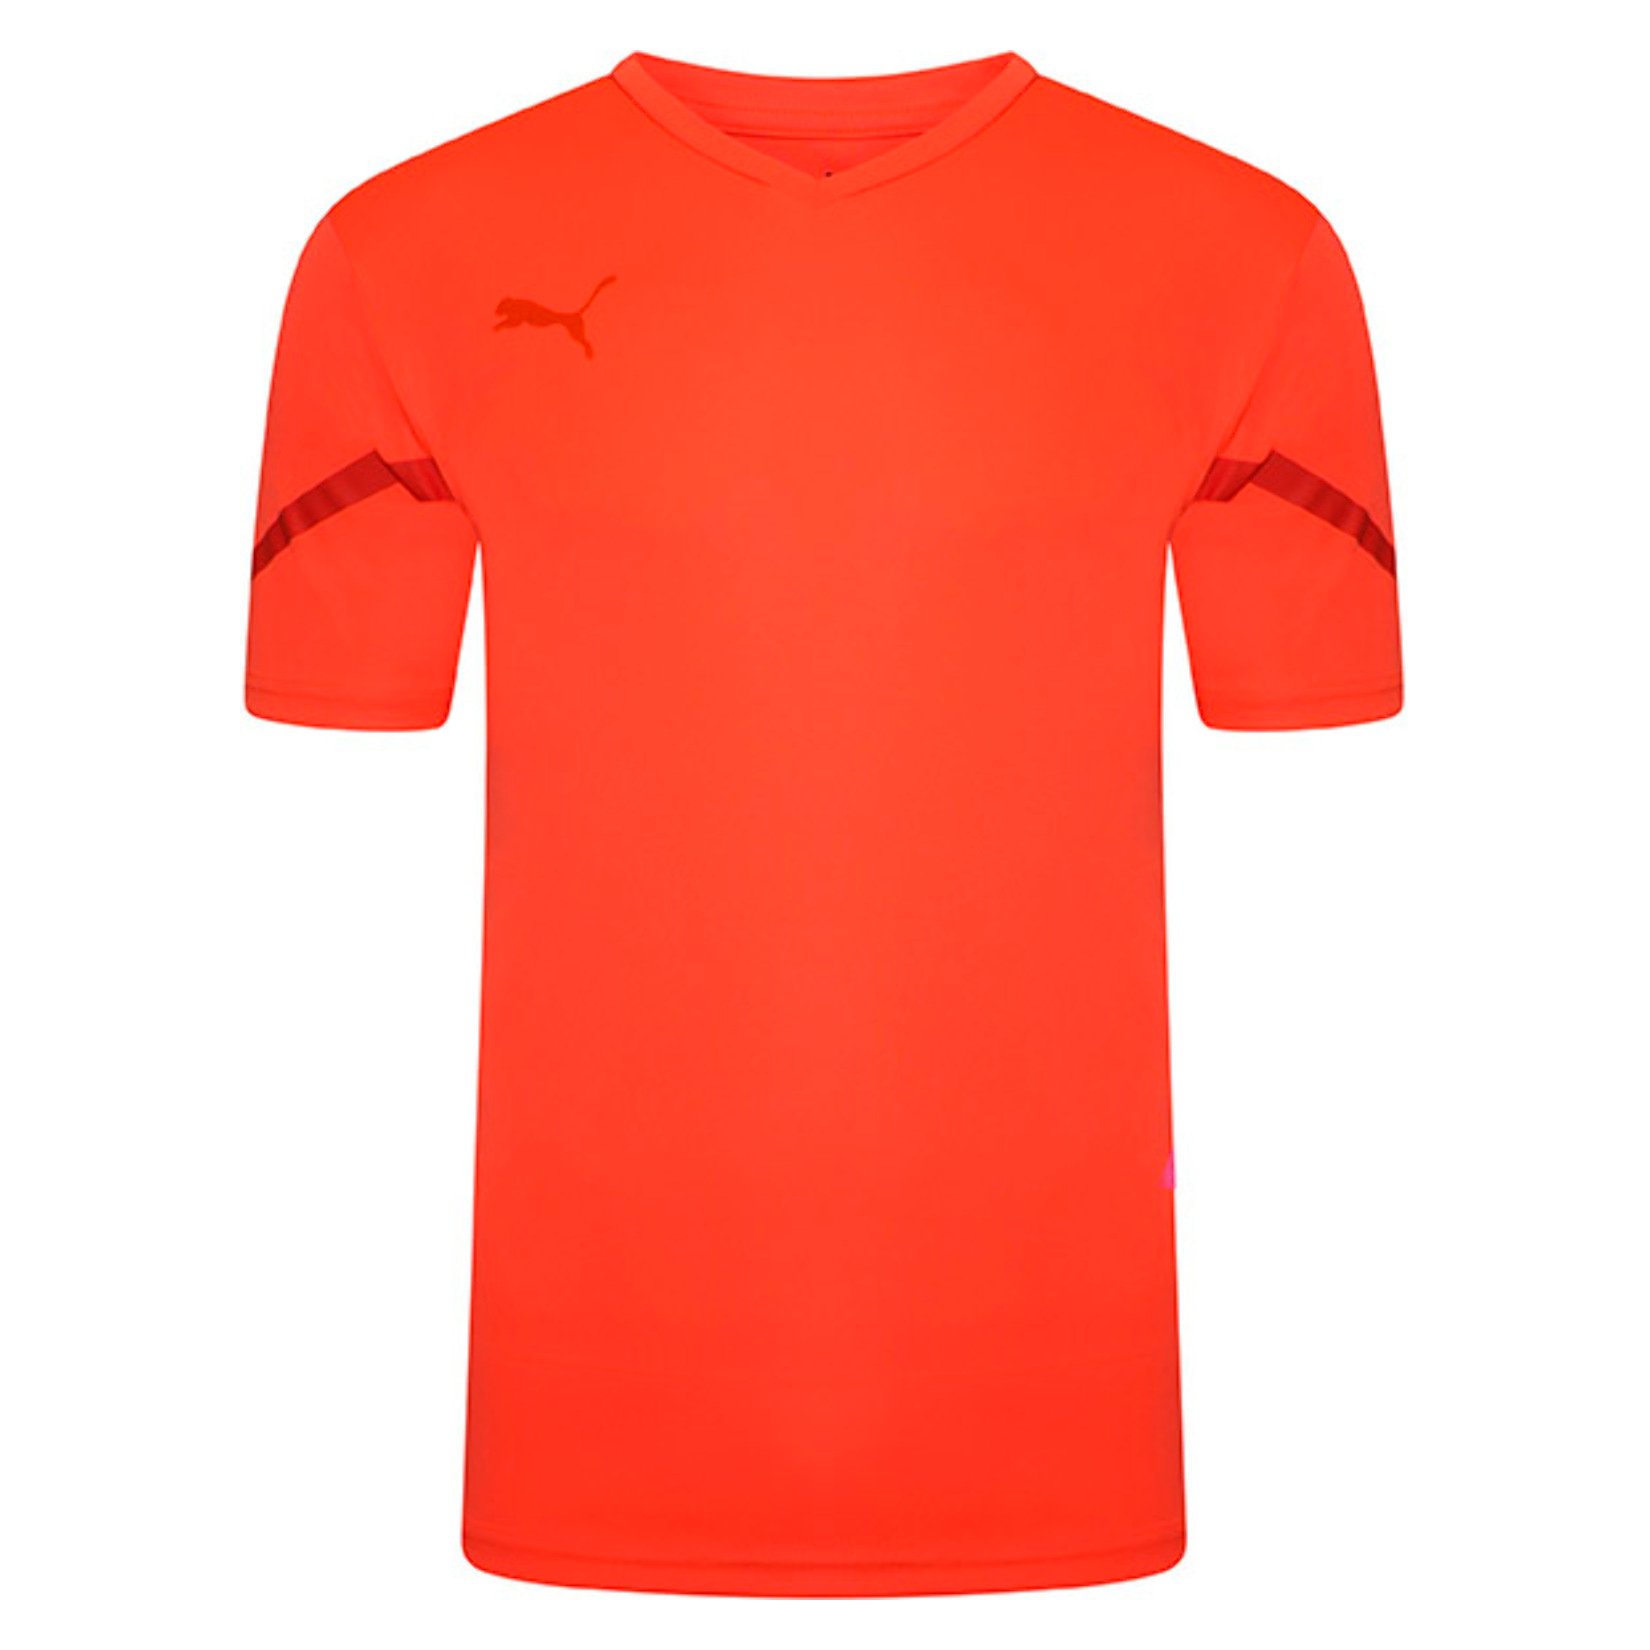 Puma Team Flash Short Sleeve Shirt